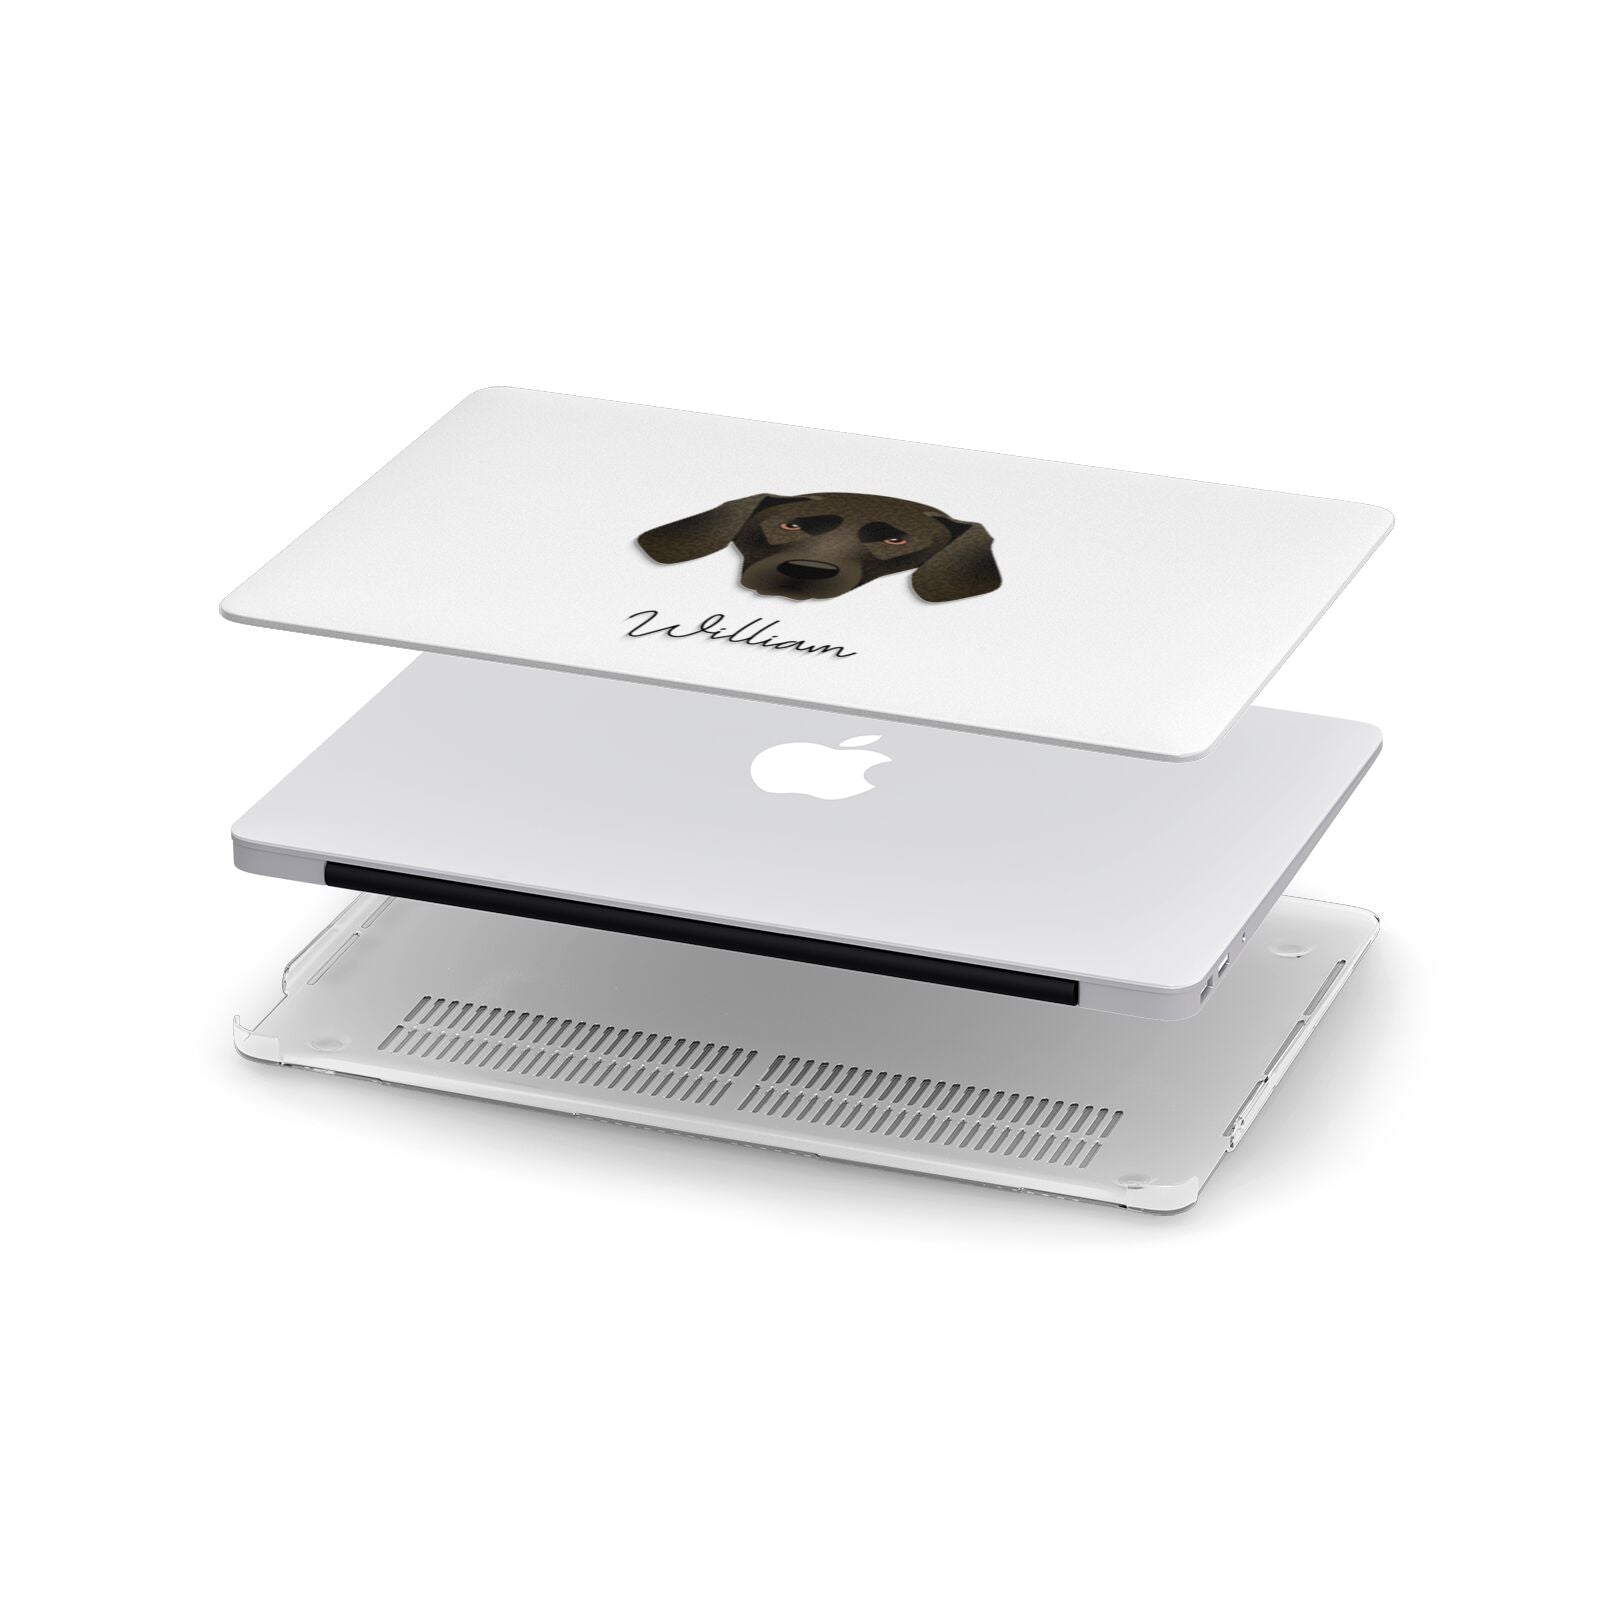 Plott Hound Personalised Apple MacBook Case in Detail